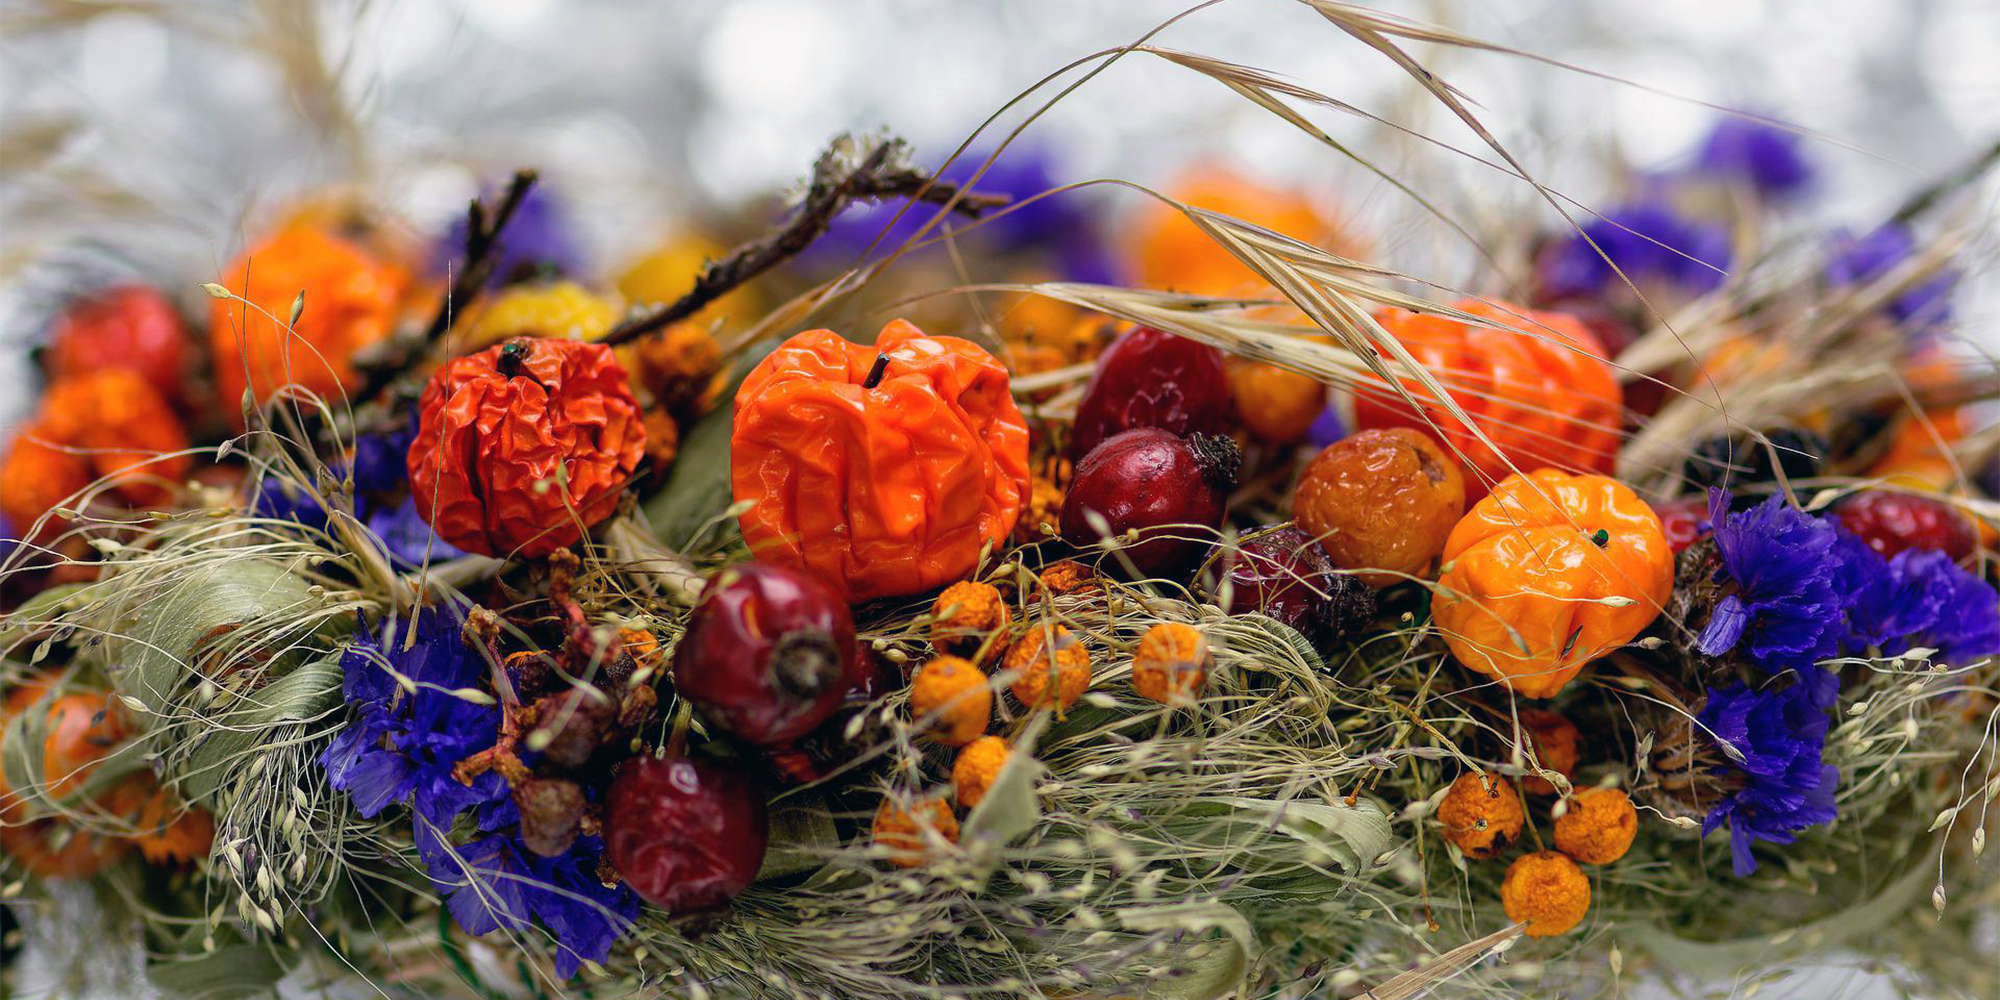 Gå til blomsterbinding i efteråret og lær at lave nogle flotte blomsterdekorationer hos FOF Sydjylland